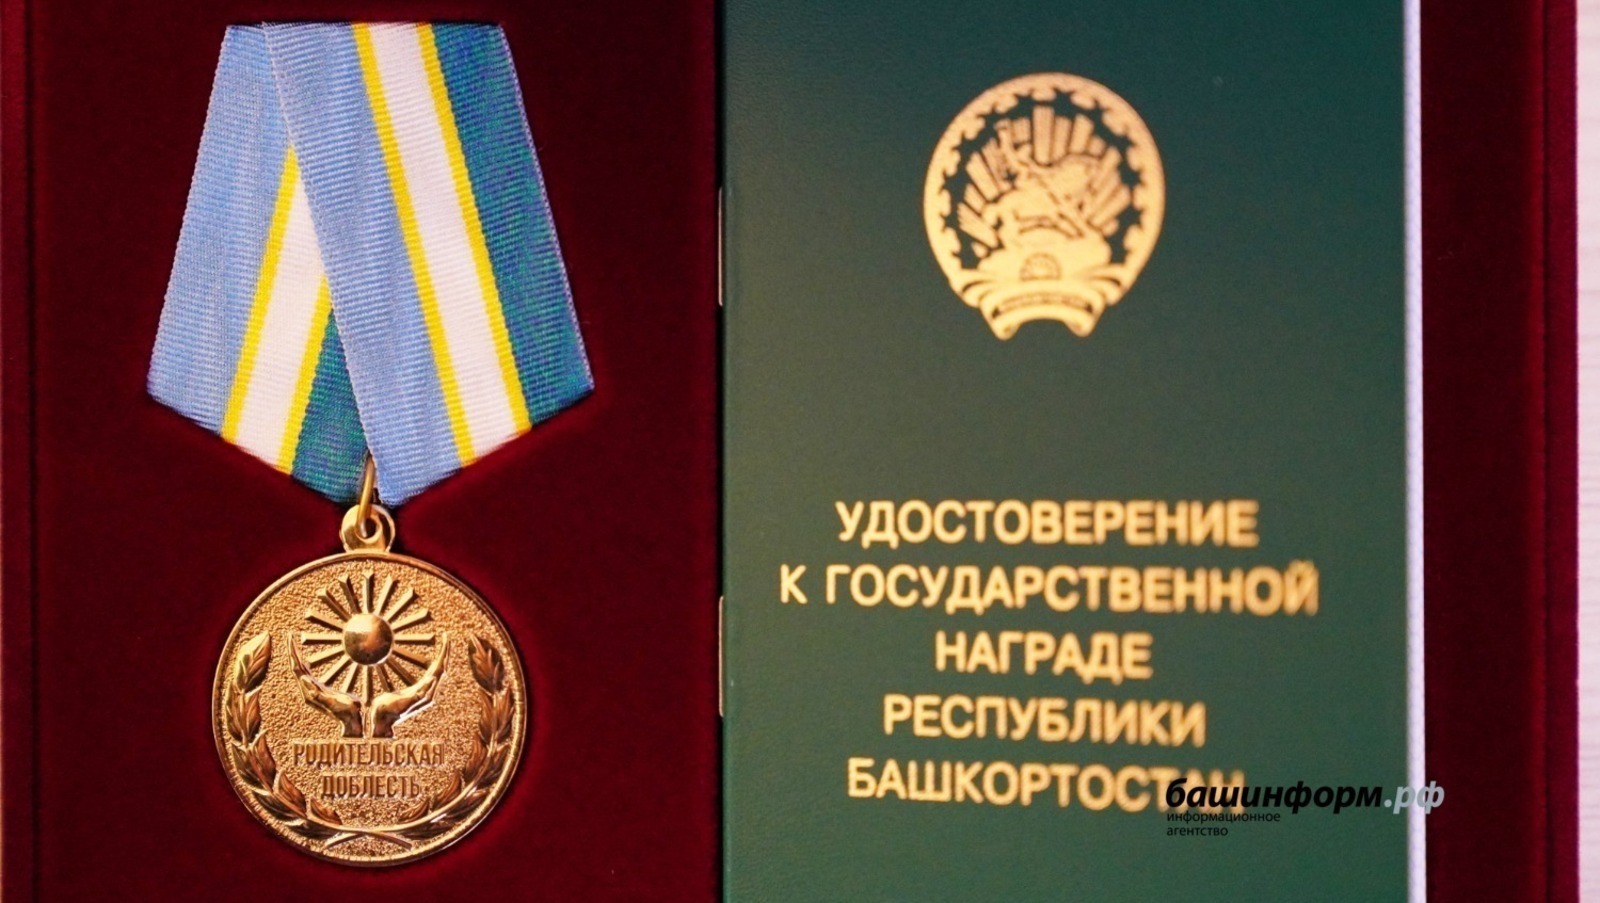 В Башкирии в список получателей медали «Родительская доблесть» внесли дополнительные категории граждан